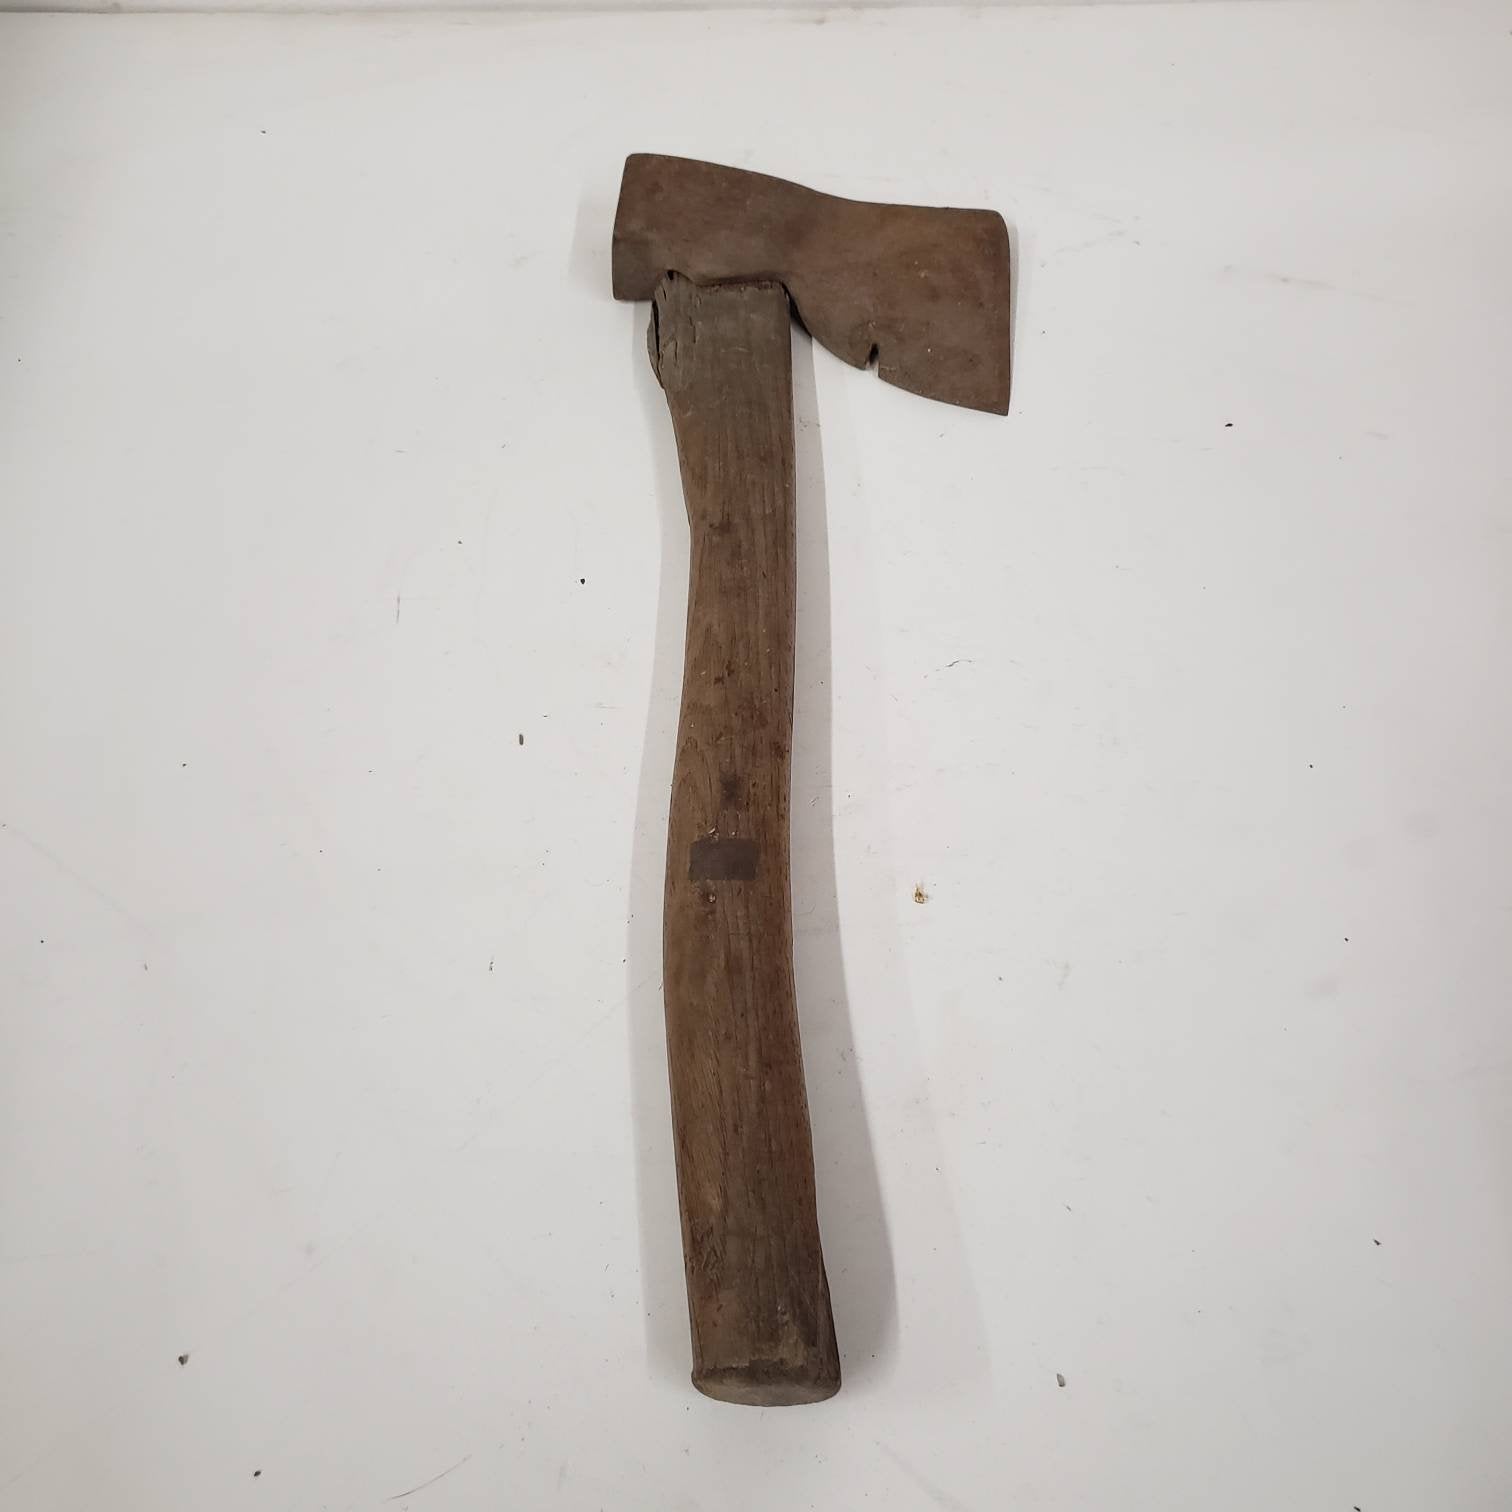 carpenters hatchet steel head angled wooden handle